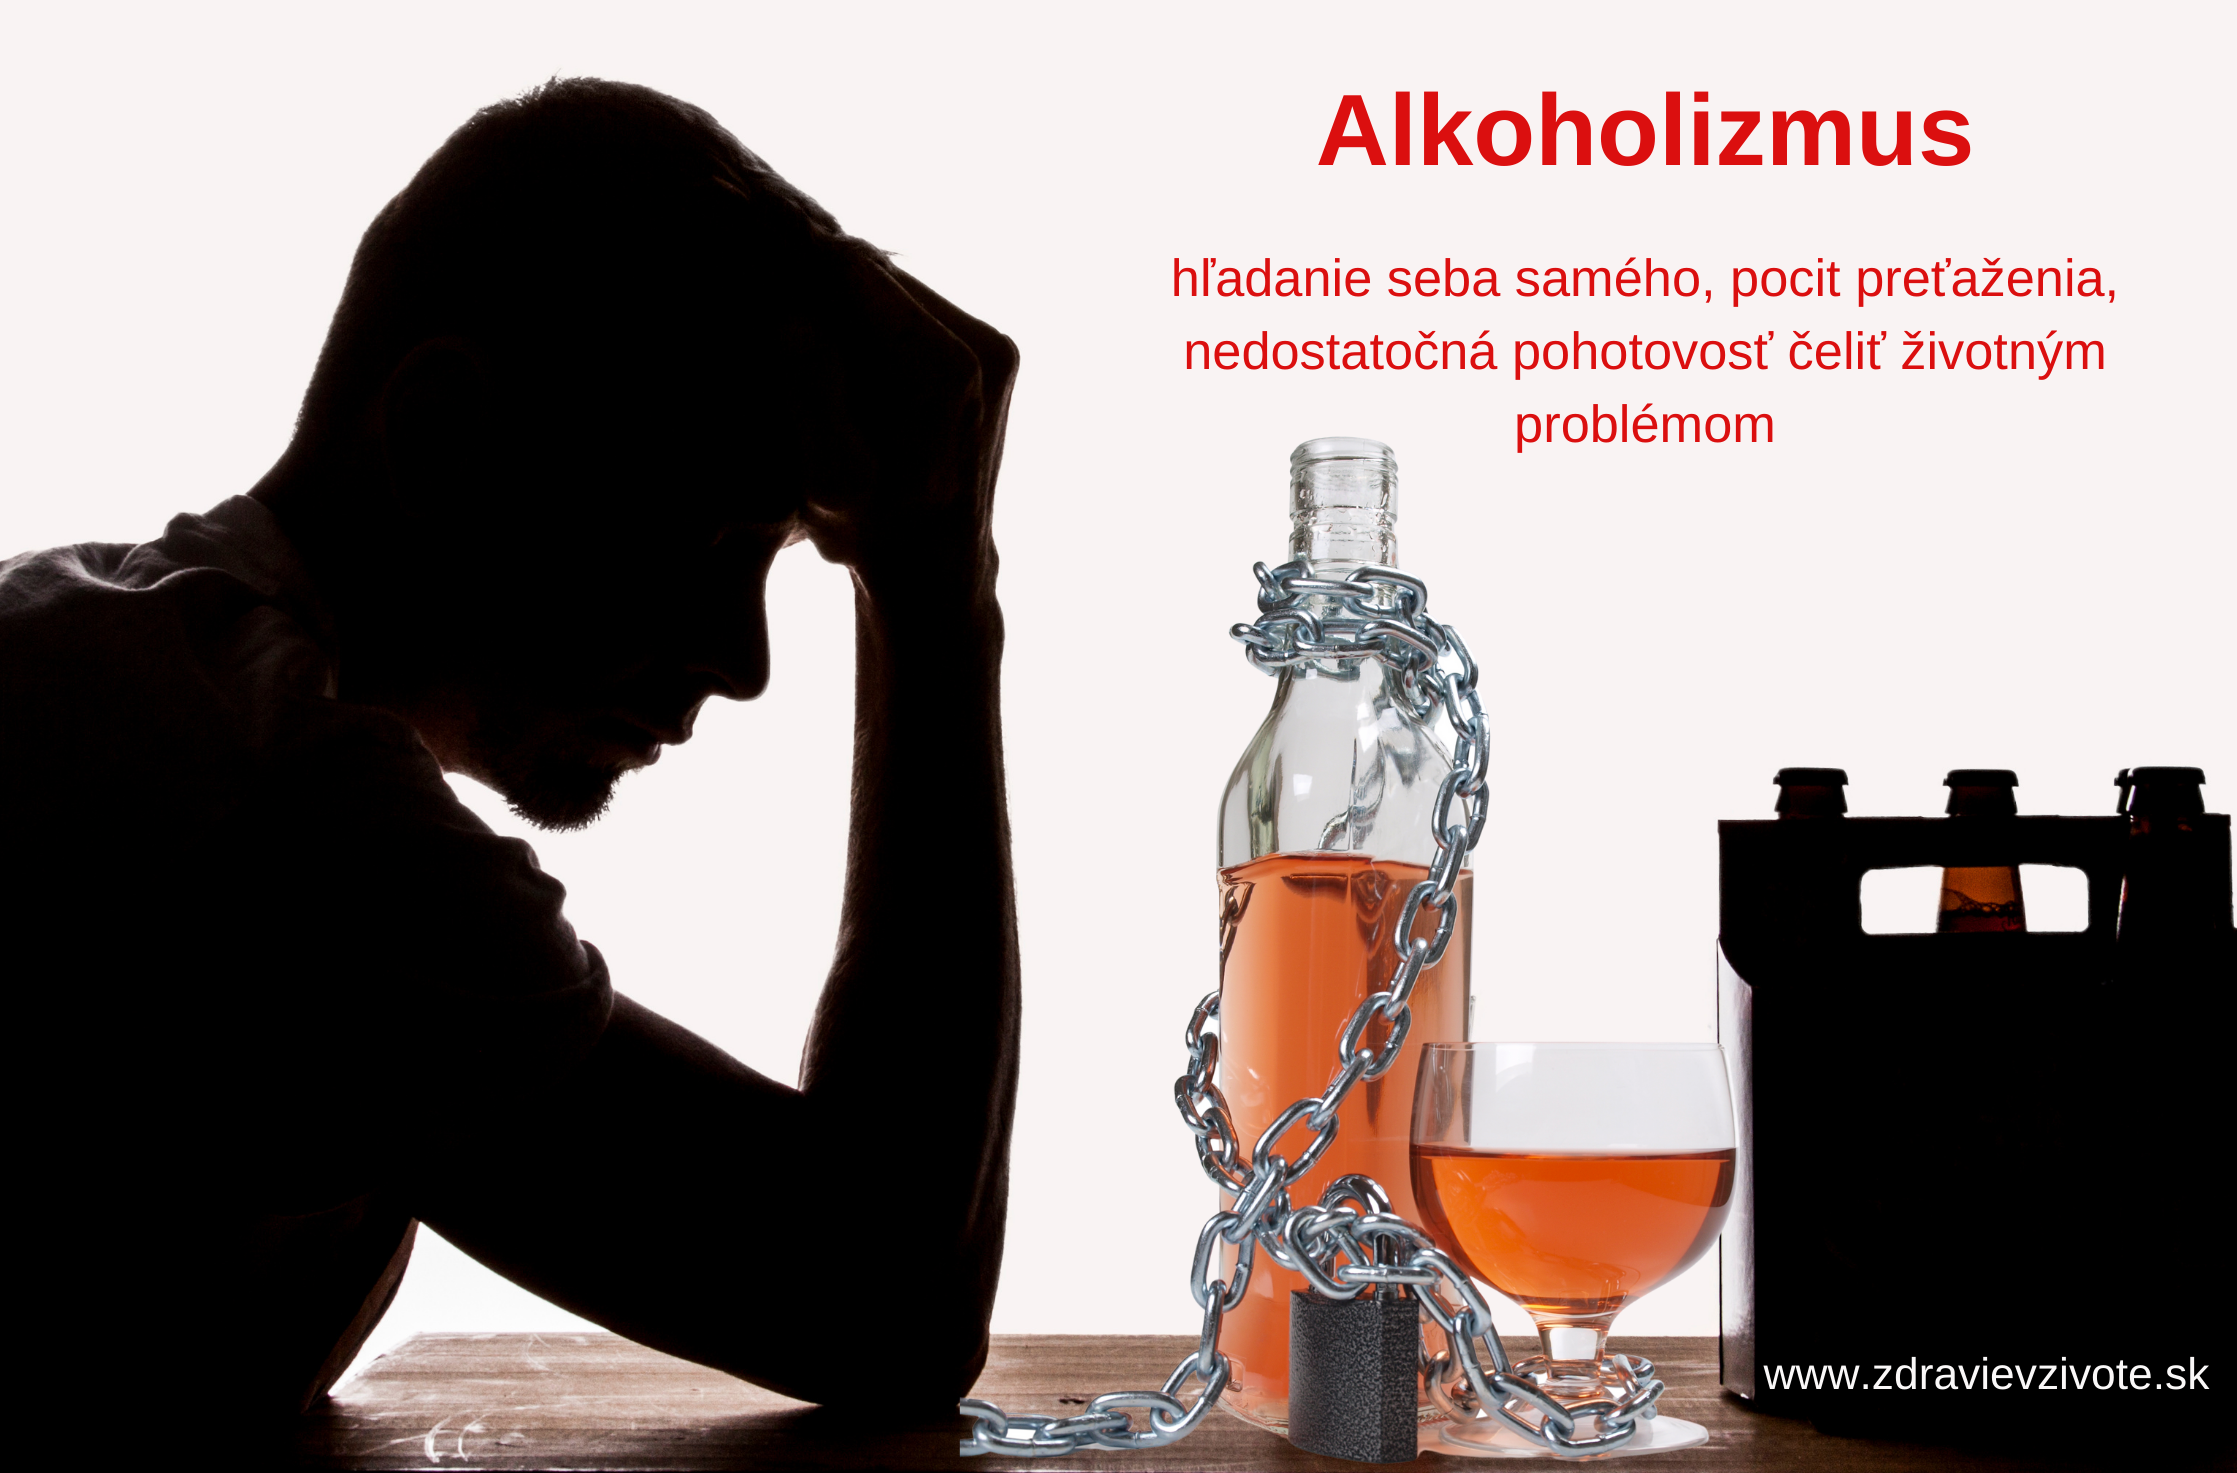 alkoholizmus, alkohol a príčiny, prečo ľudia pijú alkohol, prečo sú ľudia závislí na alkohole